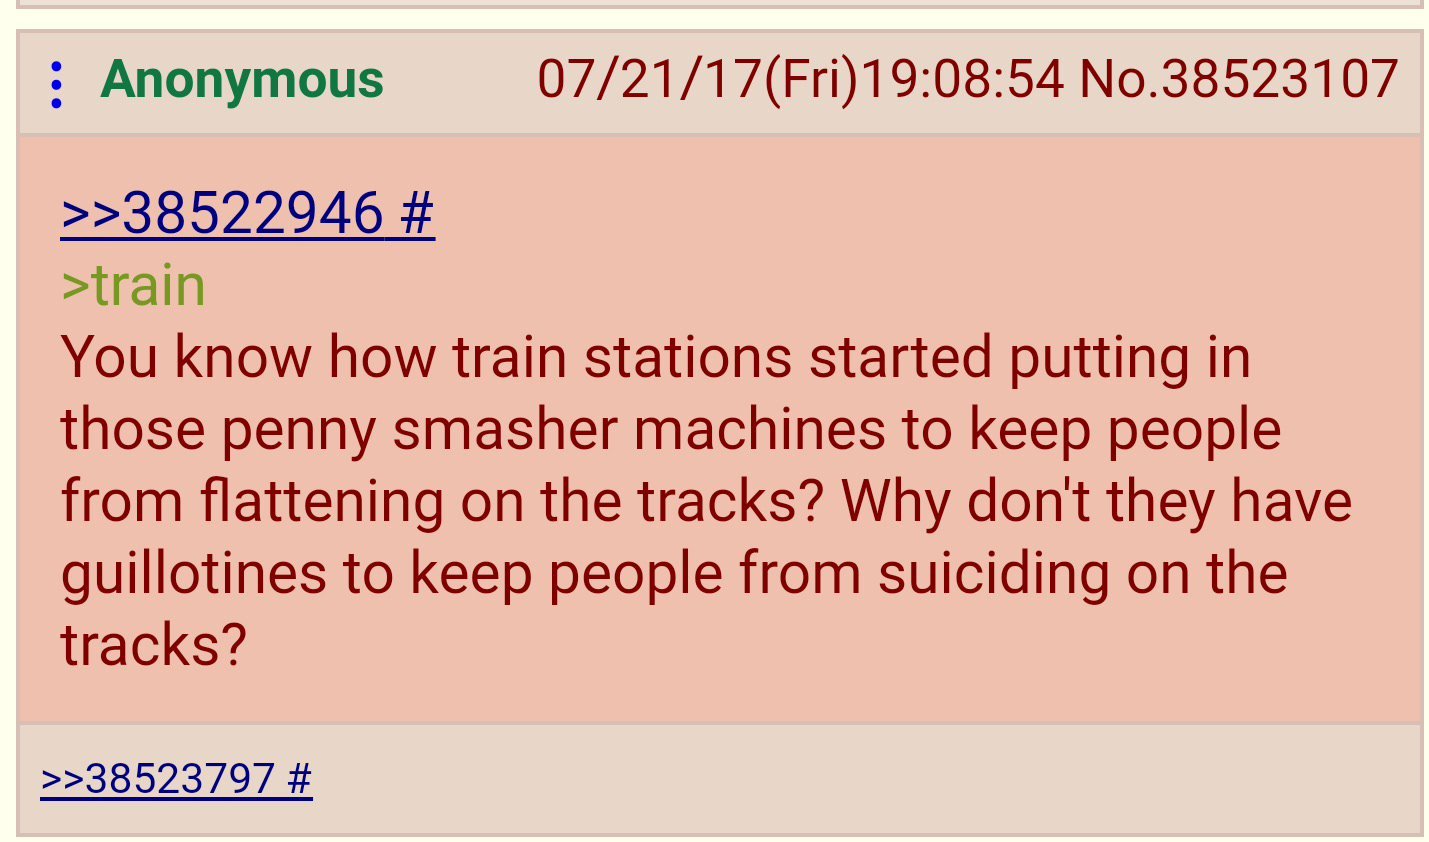 dongs in a train - meme